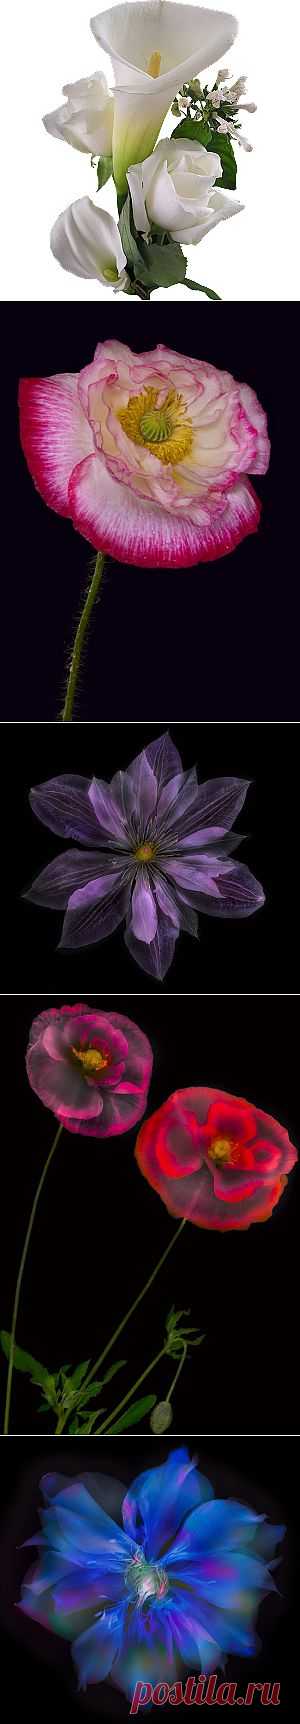 Прекрасные цветы от Harold Davis. 2 часть | Мой мир в фотографиях